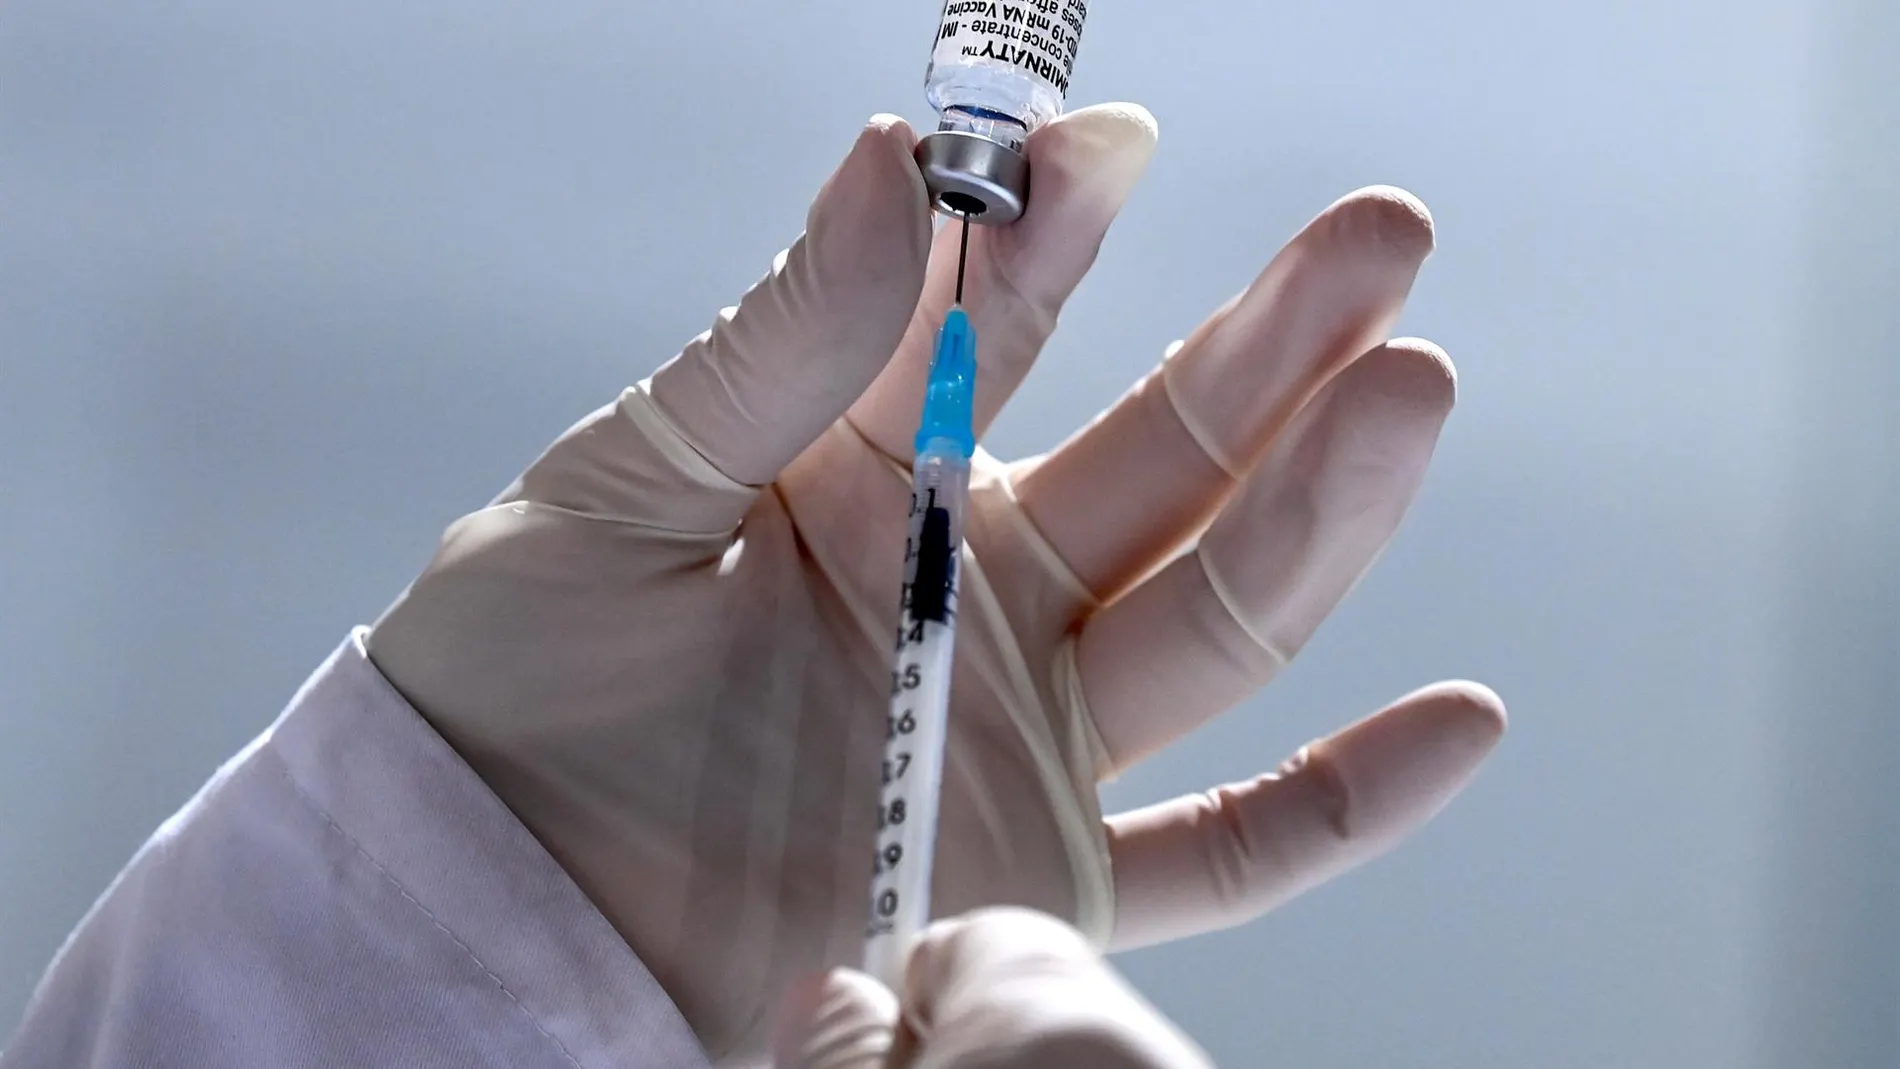 Una dosis de la vacuna contra el coronavirus reduce a casi la mitad la transmisión